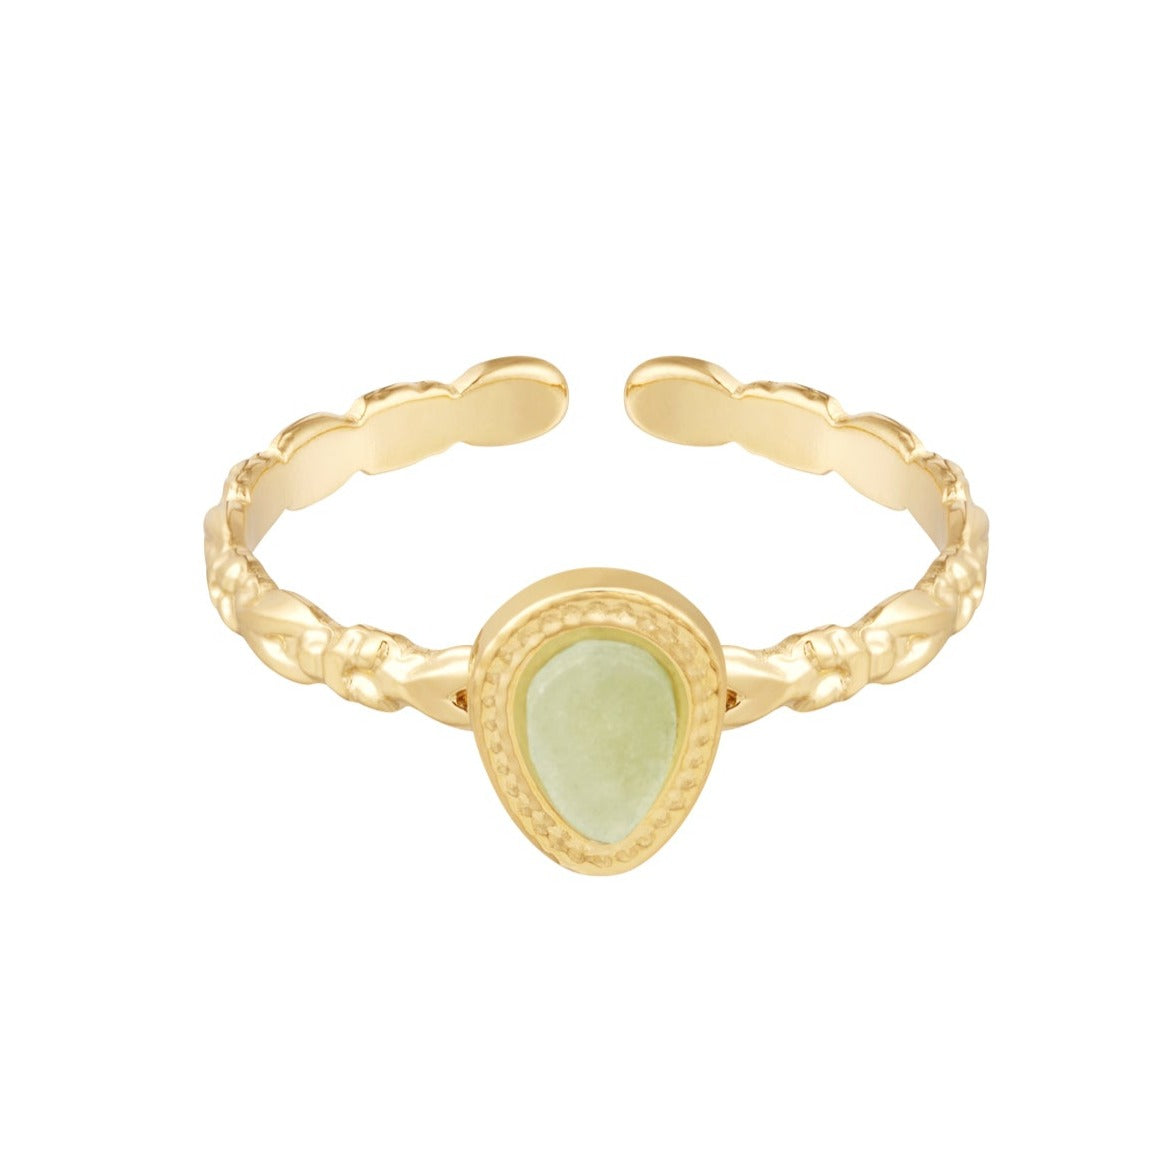 Artemis ring - Groen agaat ring goud